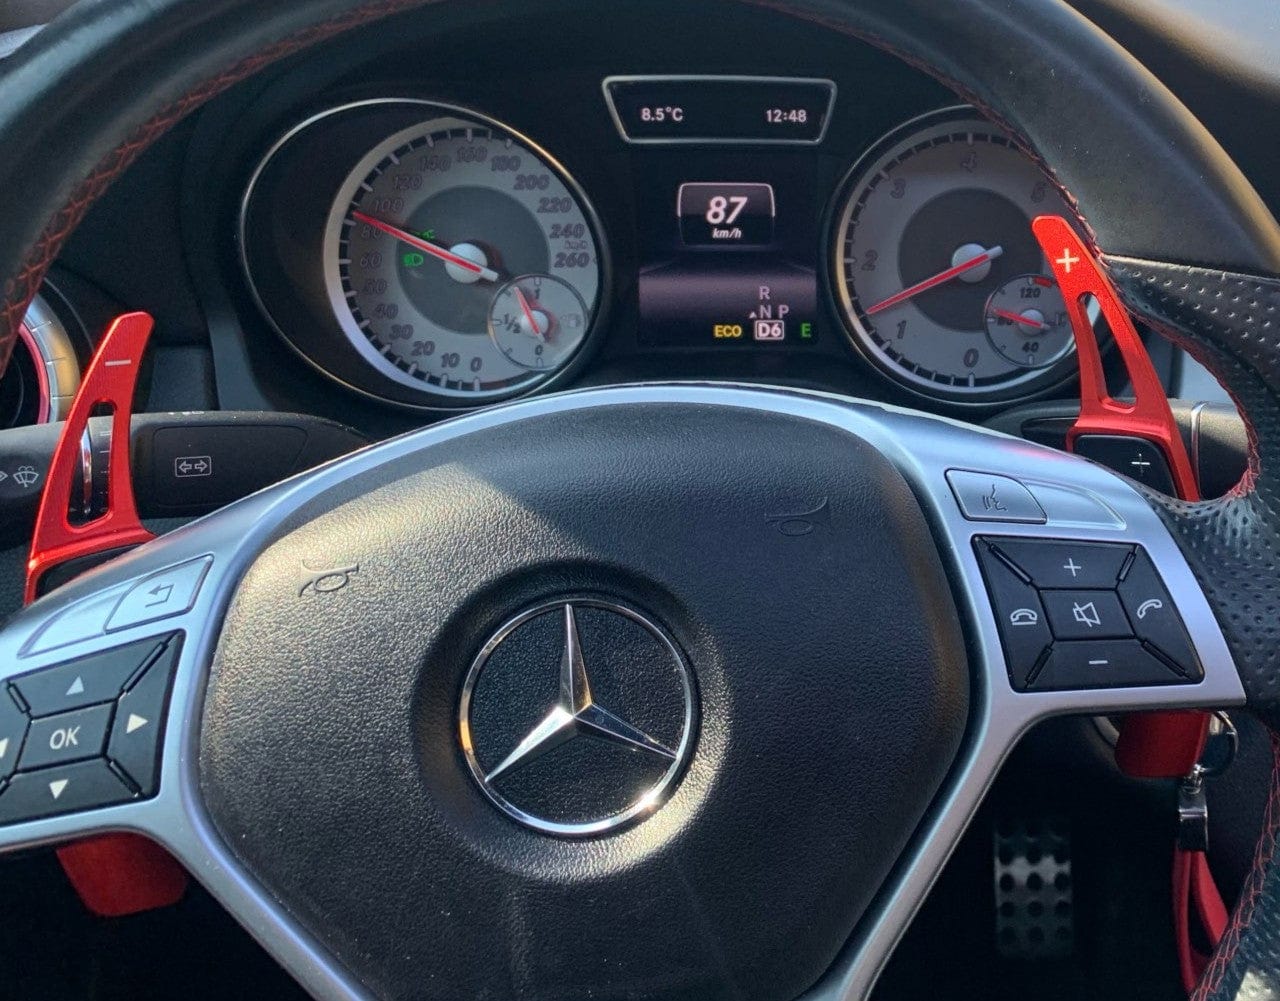 Paire Palettes Changement de Volant pour Mercedes-Benz A B CLASSE